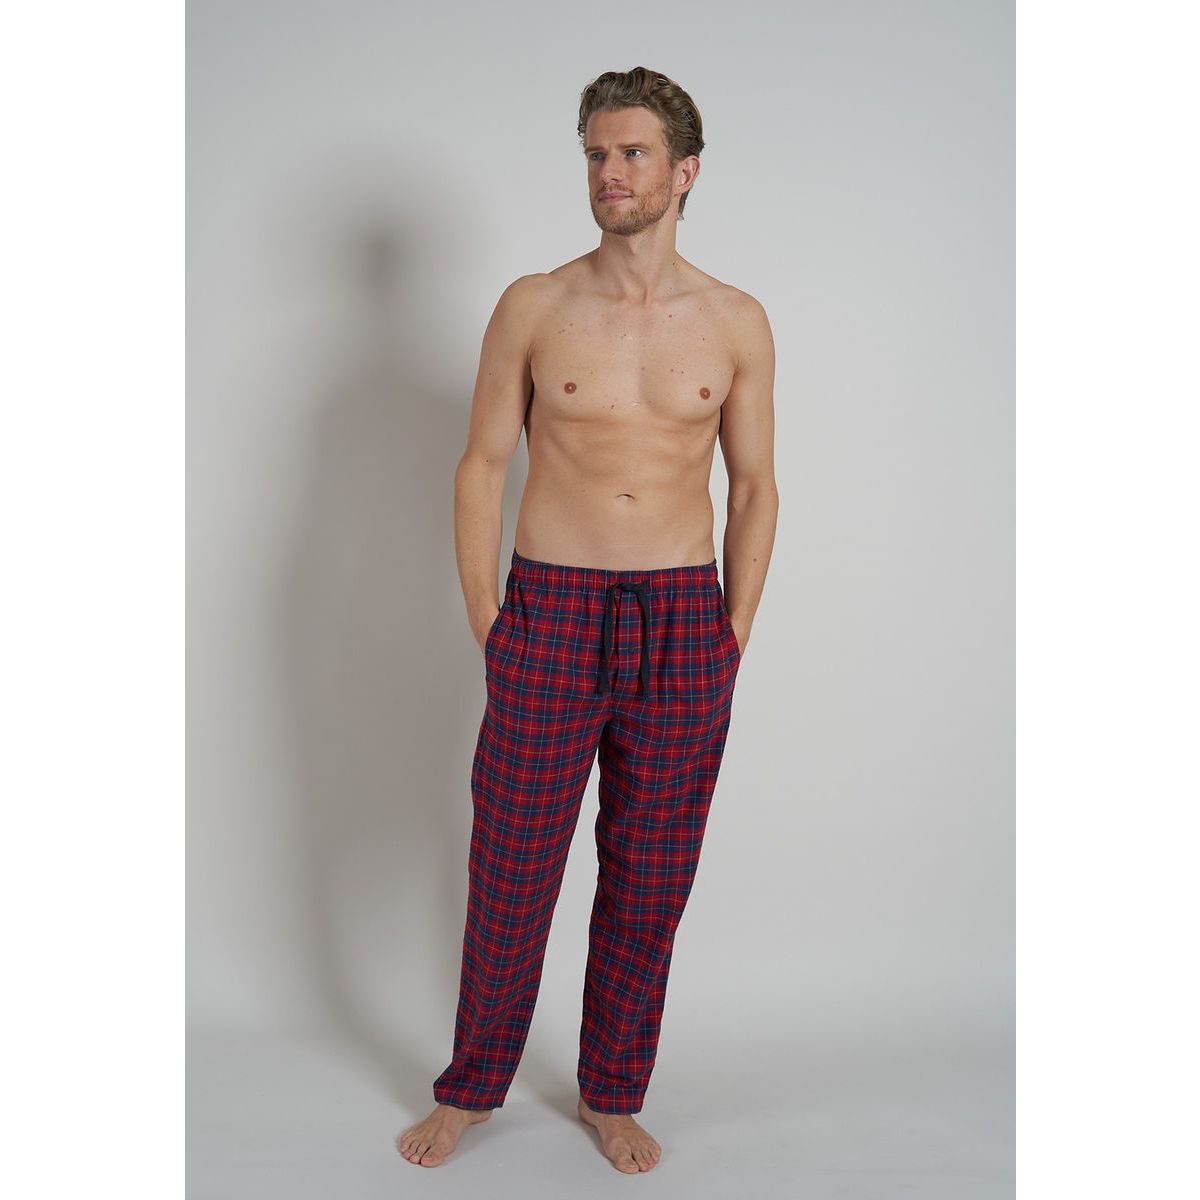 Plotselinge afdaling bijgeloof Controversieel Tom Tailor flanellen heren pyjamabroek | Gratis verzending vanaf € 40,- |  Gratis retour | Snel in huis | Online de mooiste pyjama's, nachthemden,  ondermode en meer